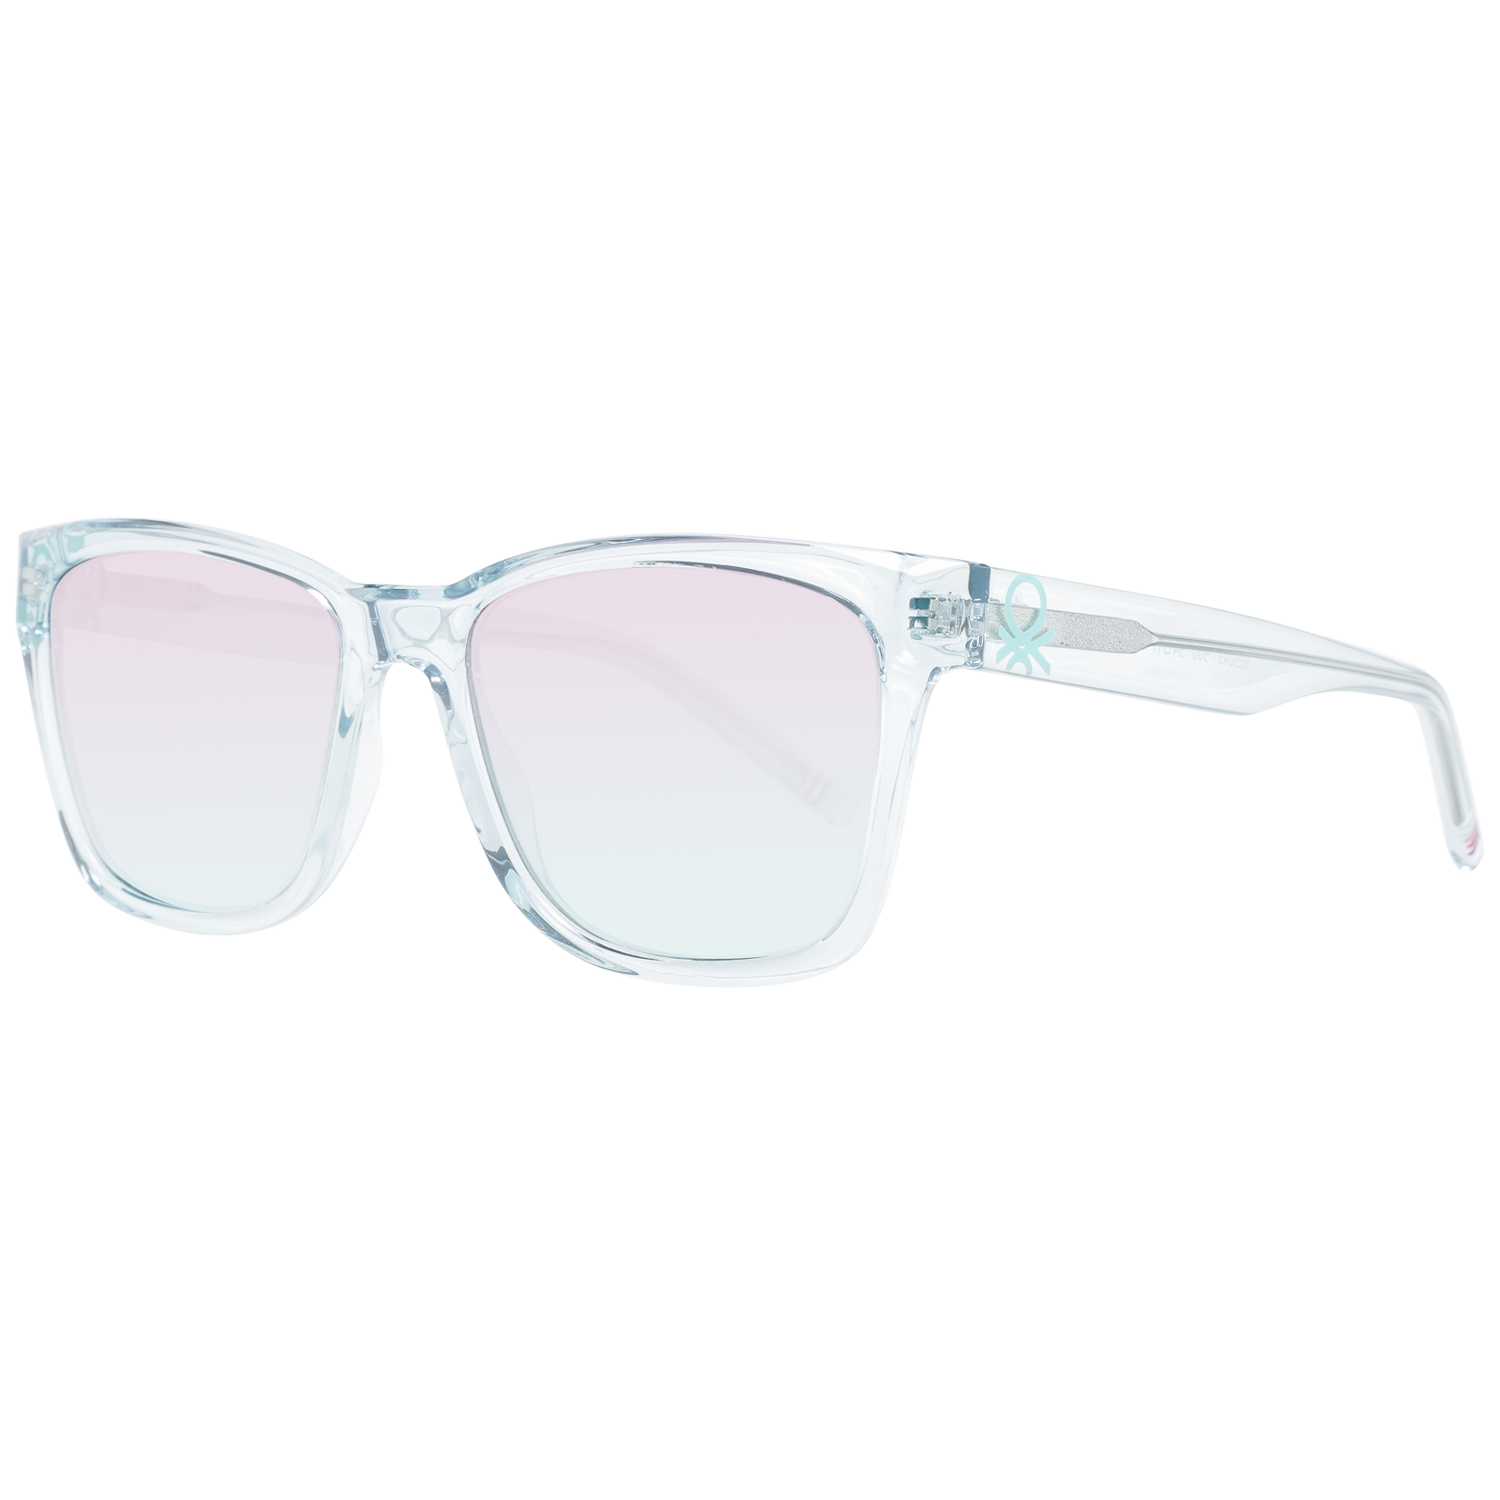 Dámské sluneční brýle Benetton BE5043 500 54